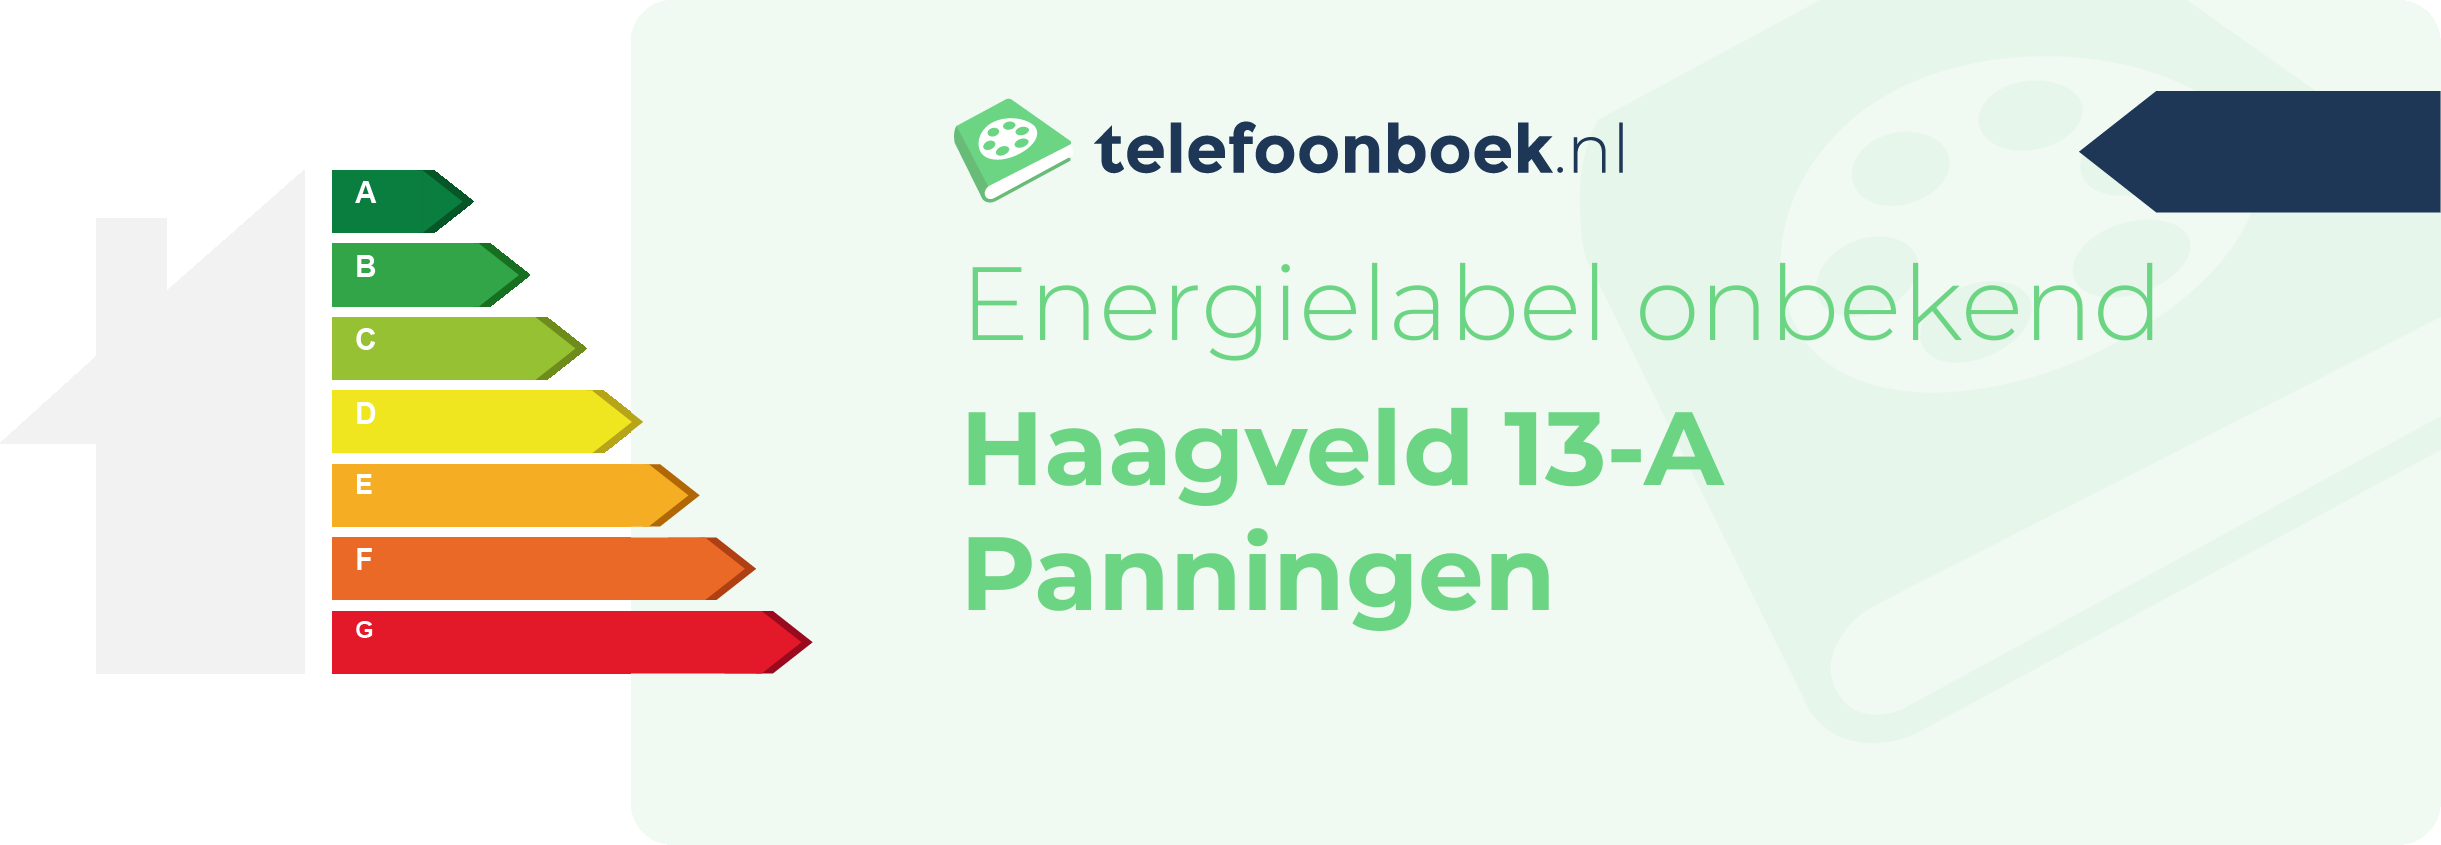 Energielabel Haagveld 13-A Panningen